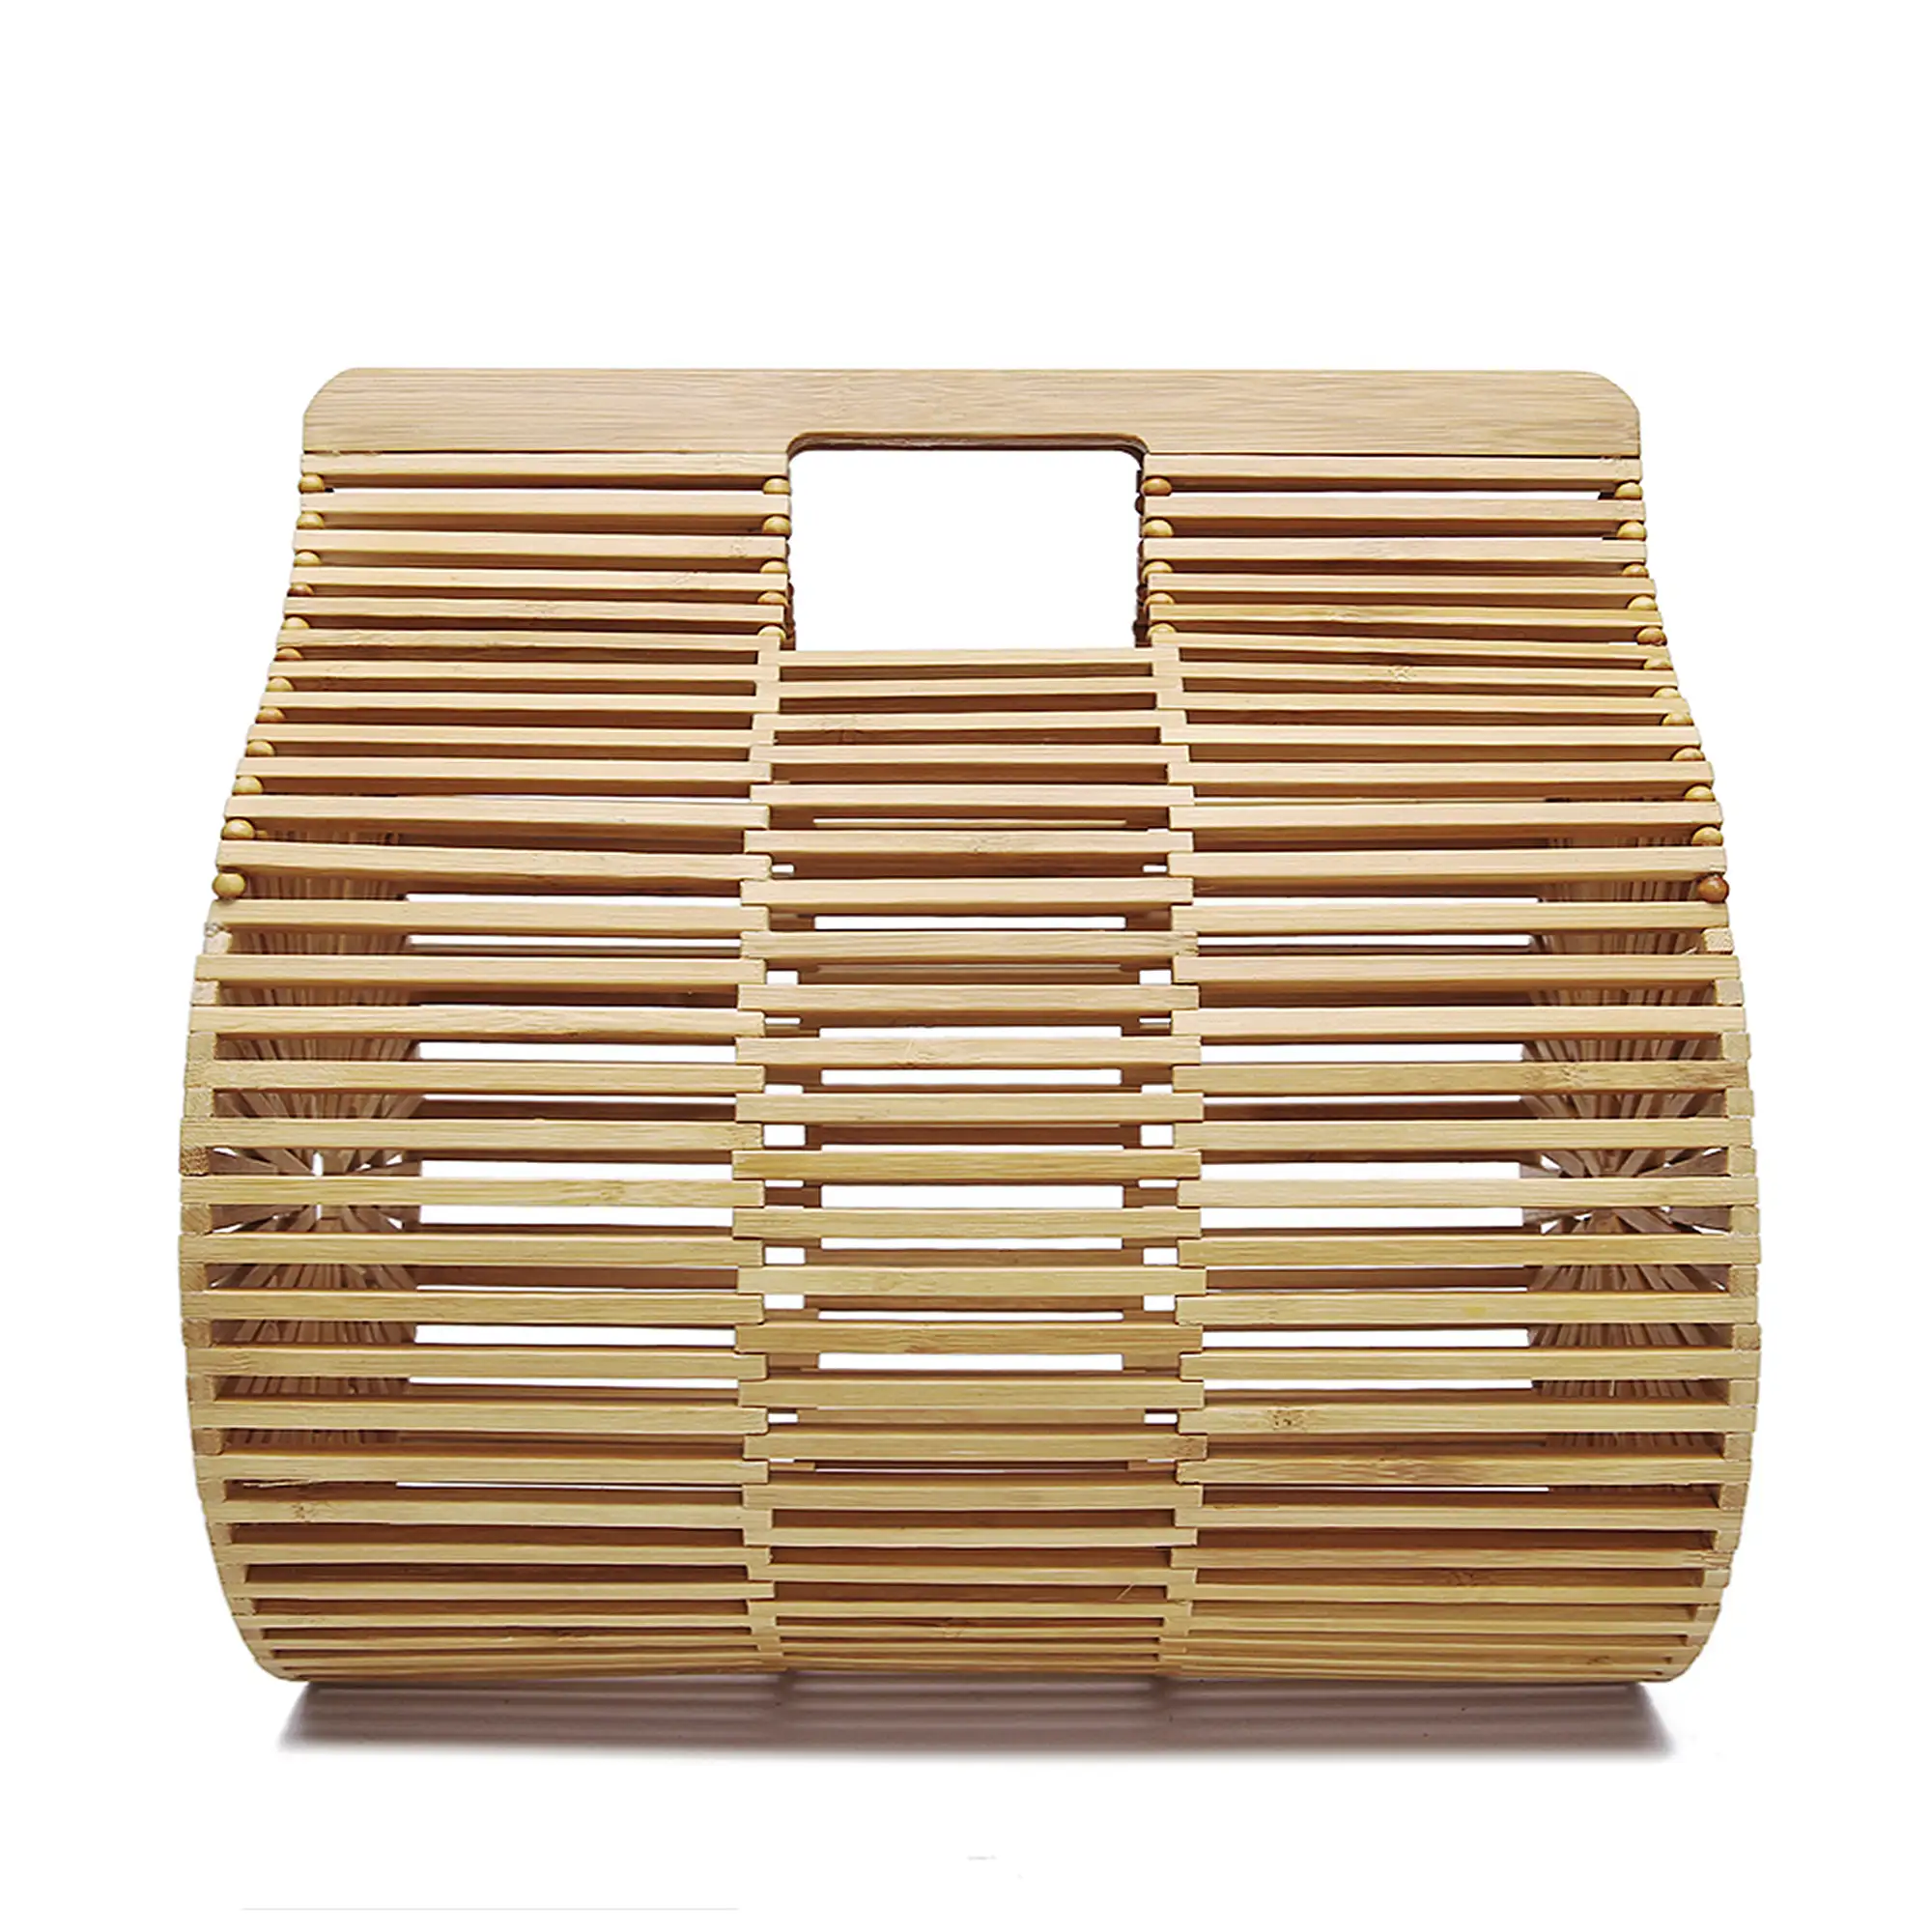 Zoagli bolso de mano en madera de bambú.